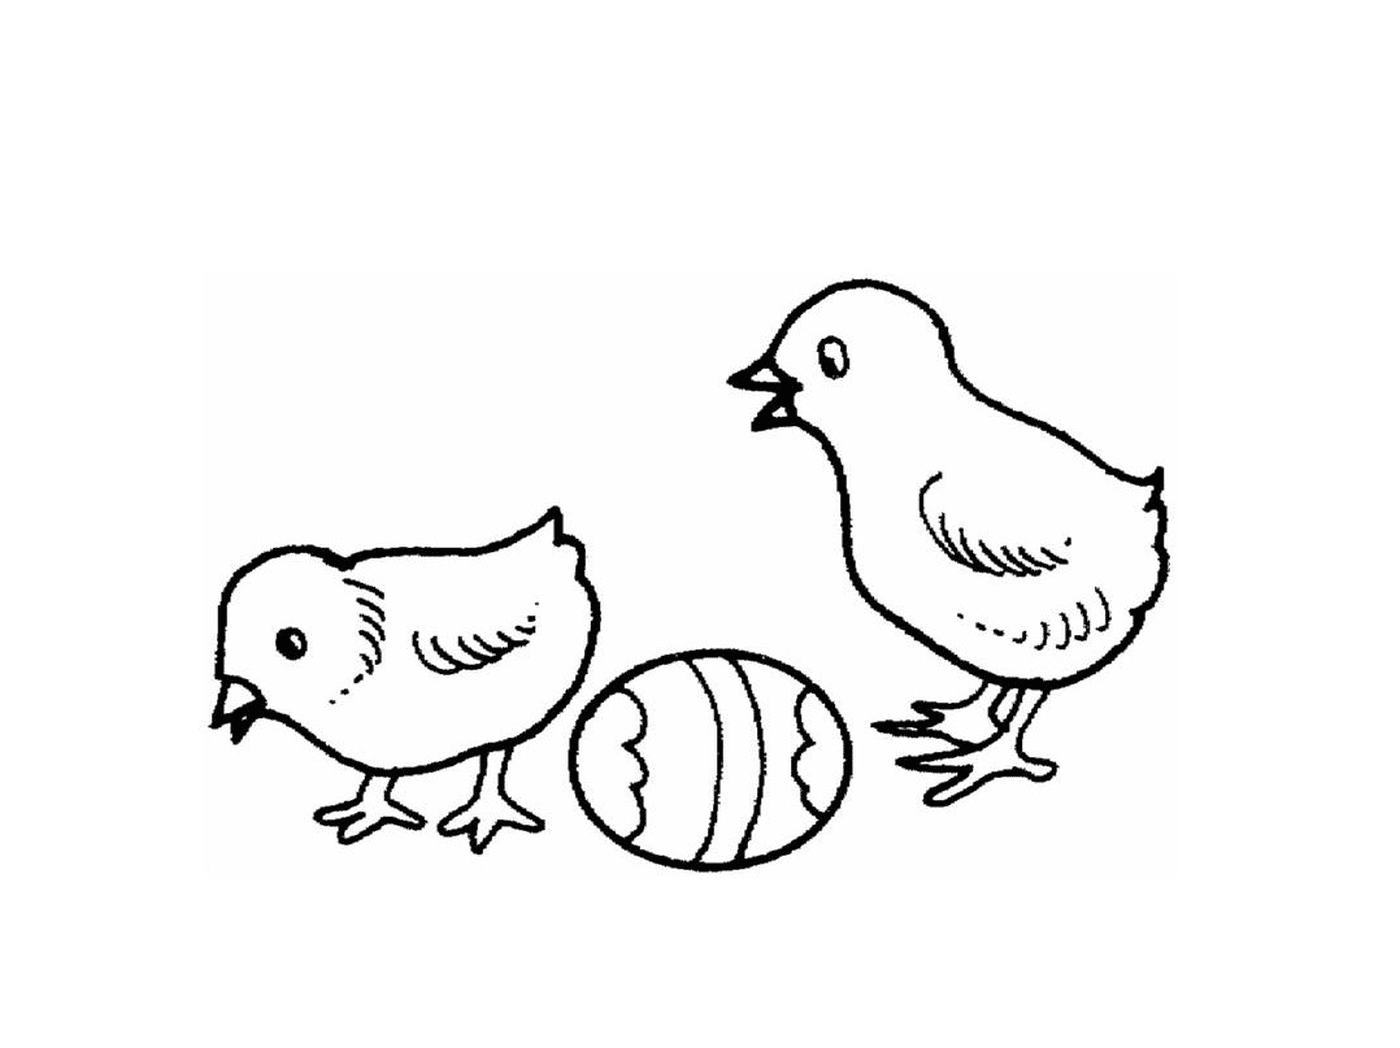  两只鸡和一只鸡蛋 并肩站在一起 